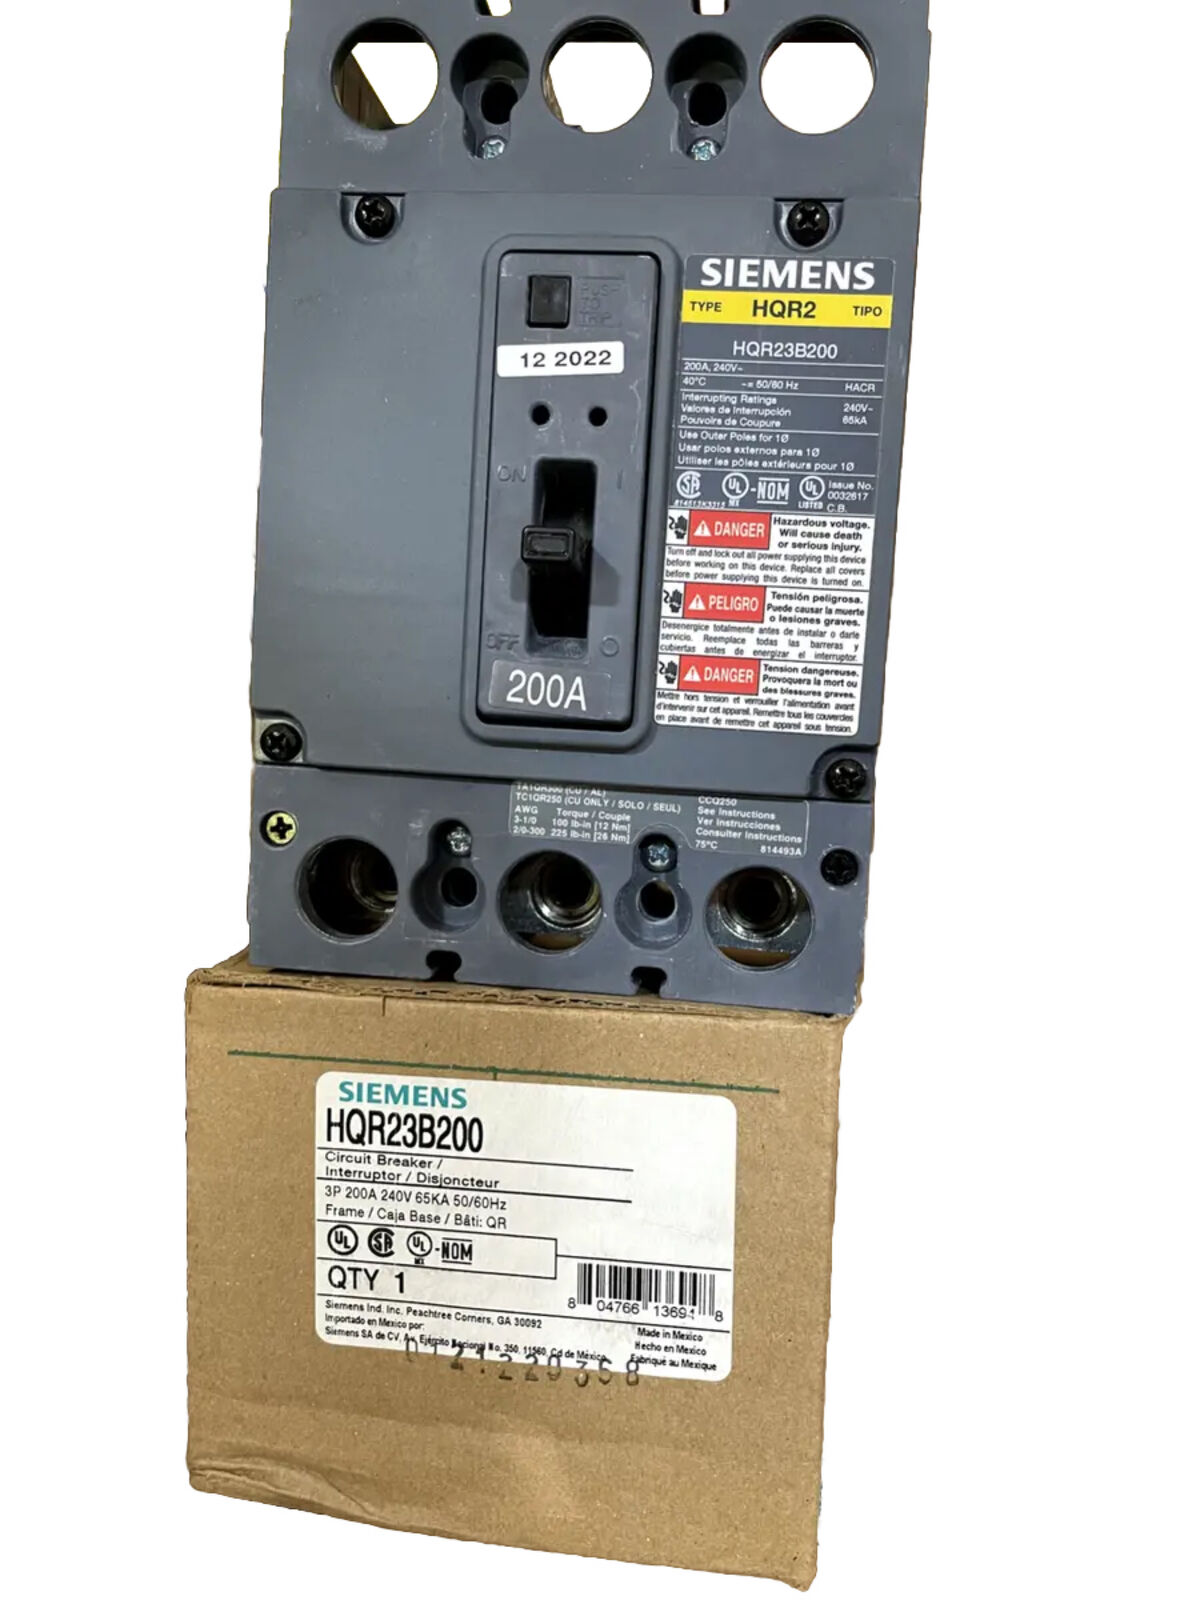 NEW Siemens HQR23B200 3p 240v 200a 65k Circuit Breaker NEW IN BOX